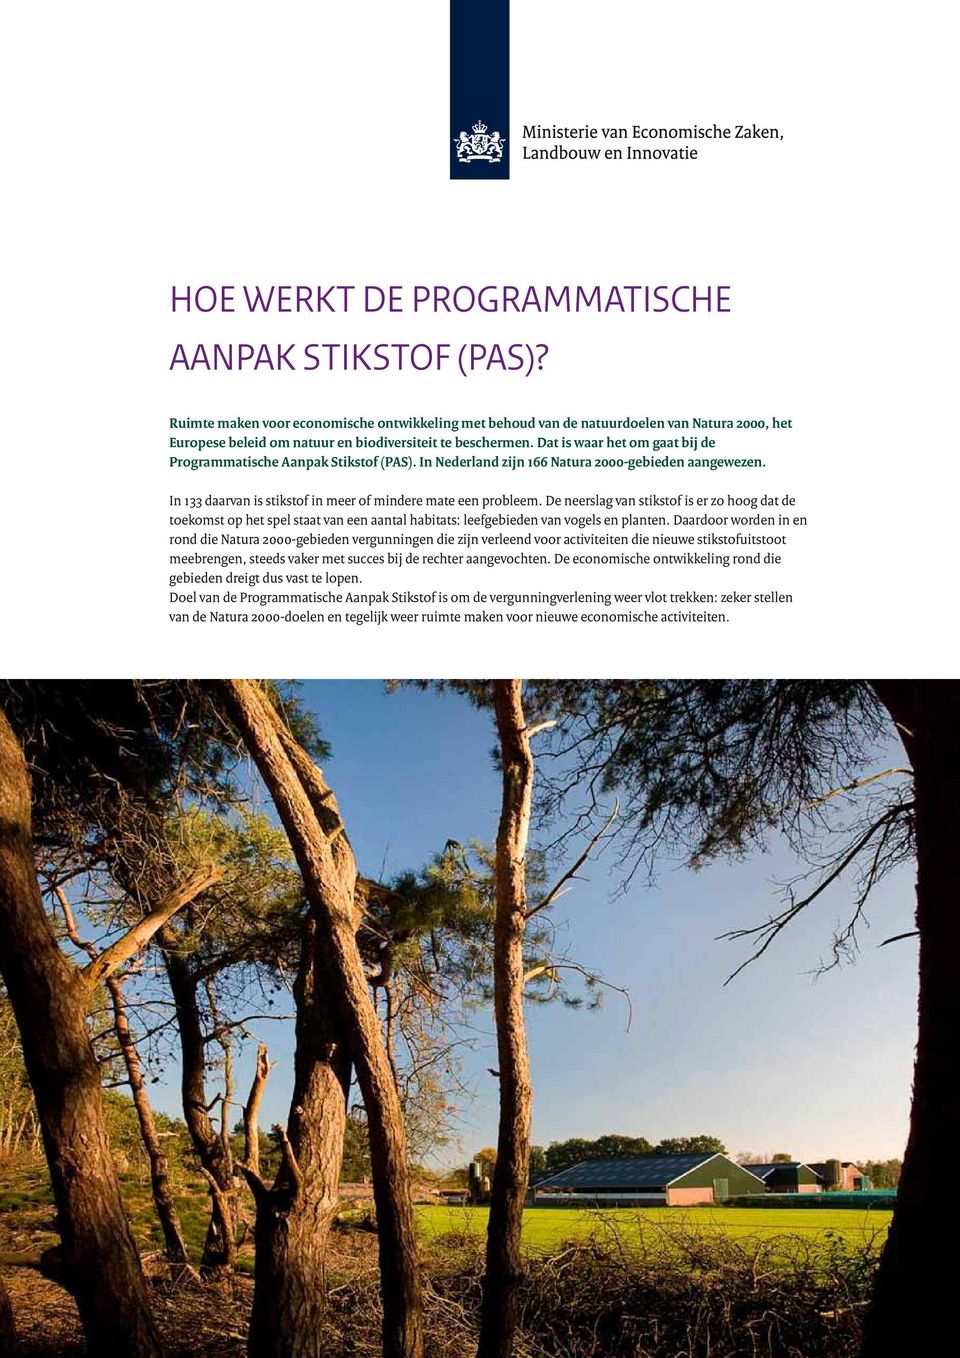 Dat is waar het om gaat bij de Programmatische Aanpak Stikstof (PAS). In Nederland zijn 166 Natura 2000-gebieden aangewezen. In 133 daarvan is stikstof in meer of mindere mate een probleem.